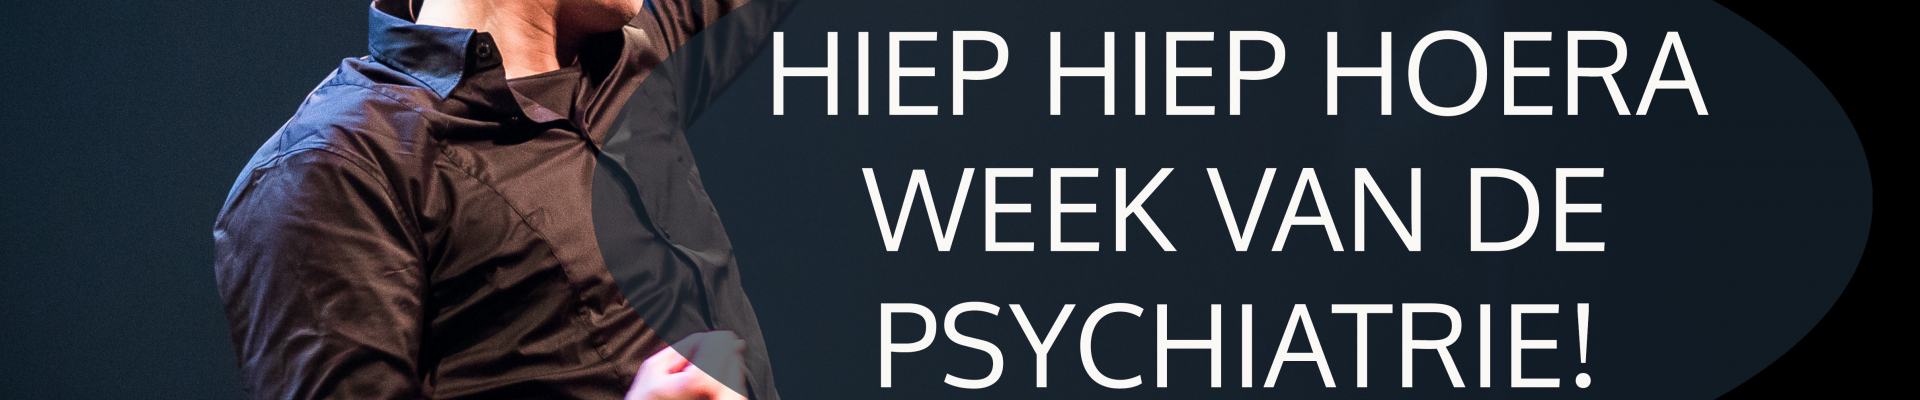 Week van de psychiatrie: Andy de Paranoïde Schizofreen